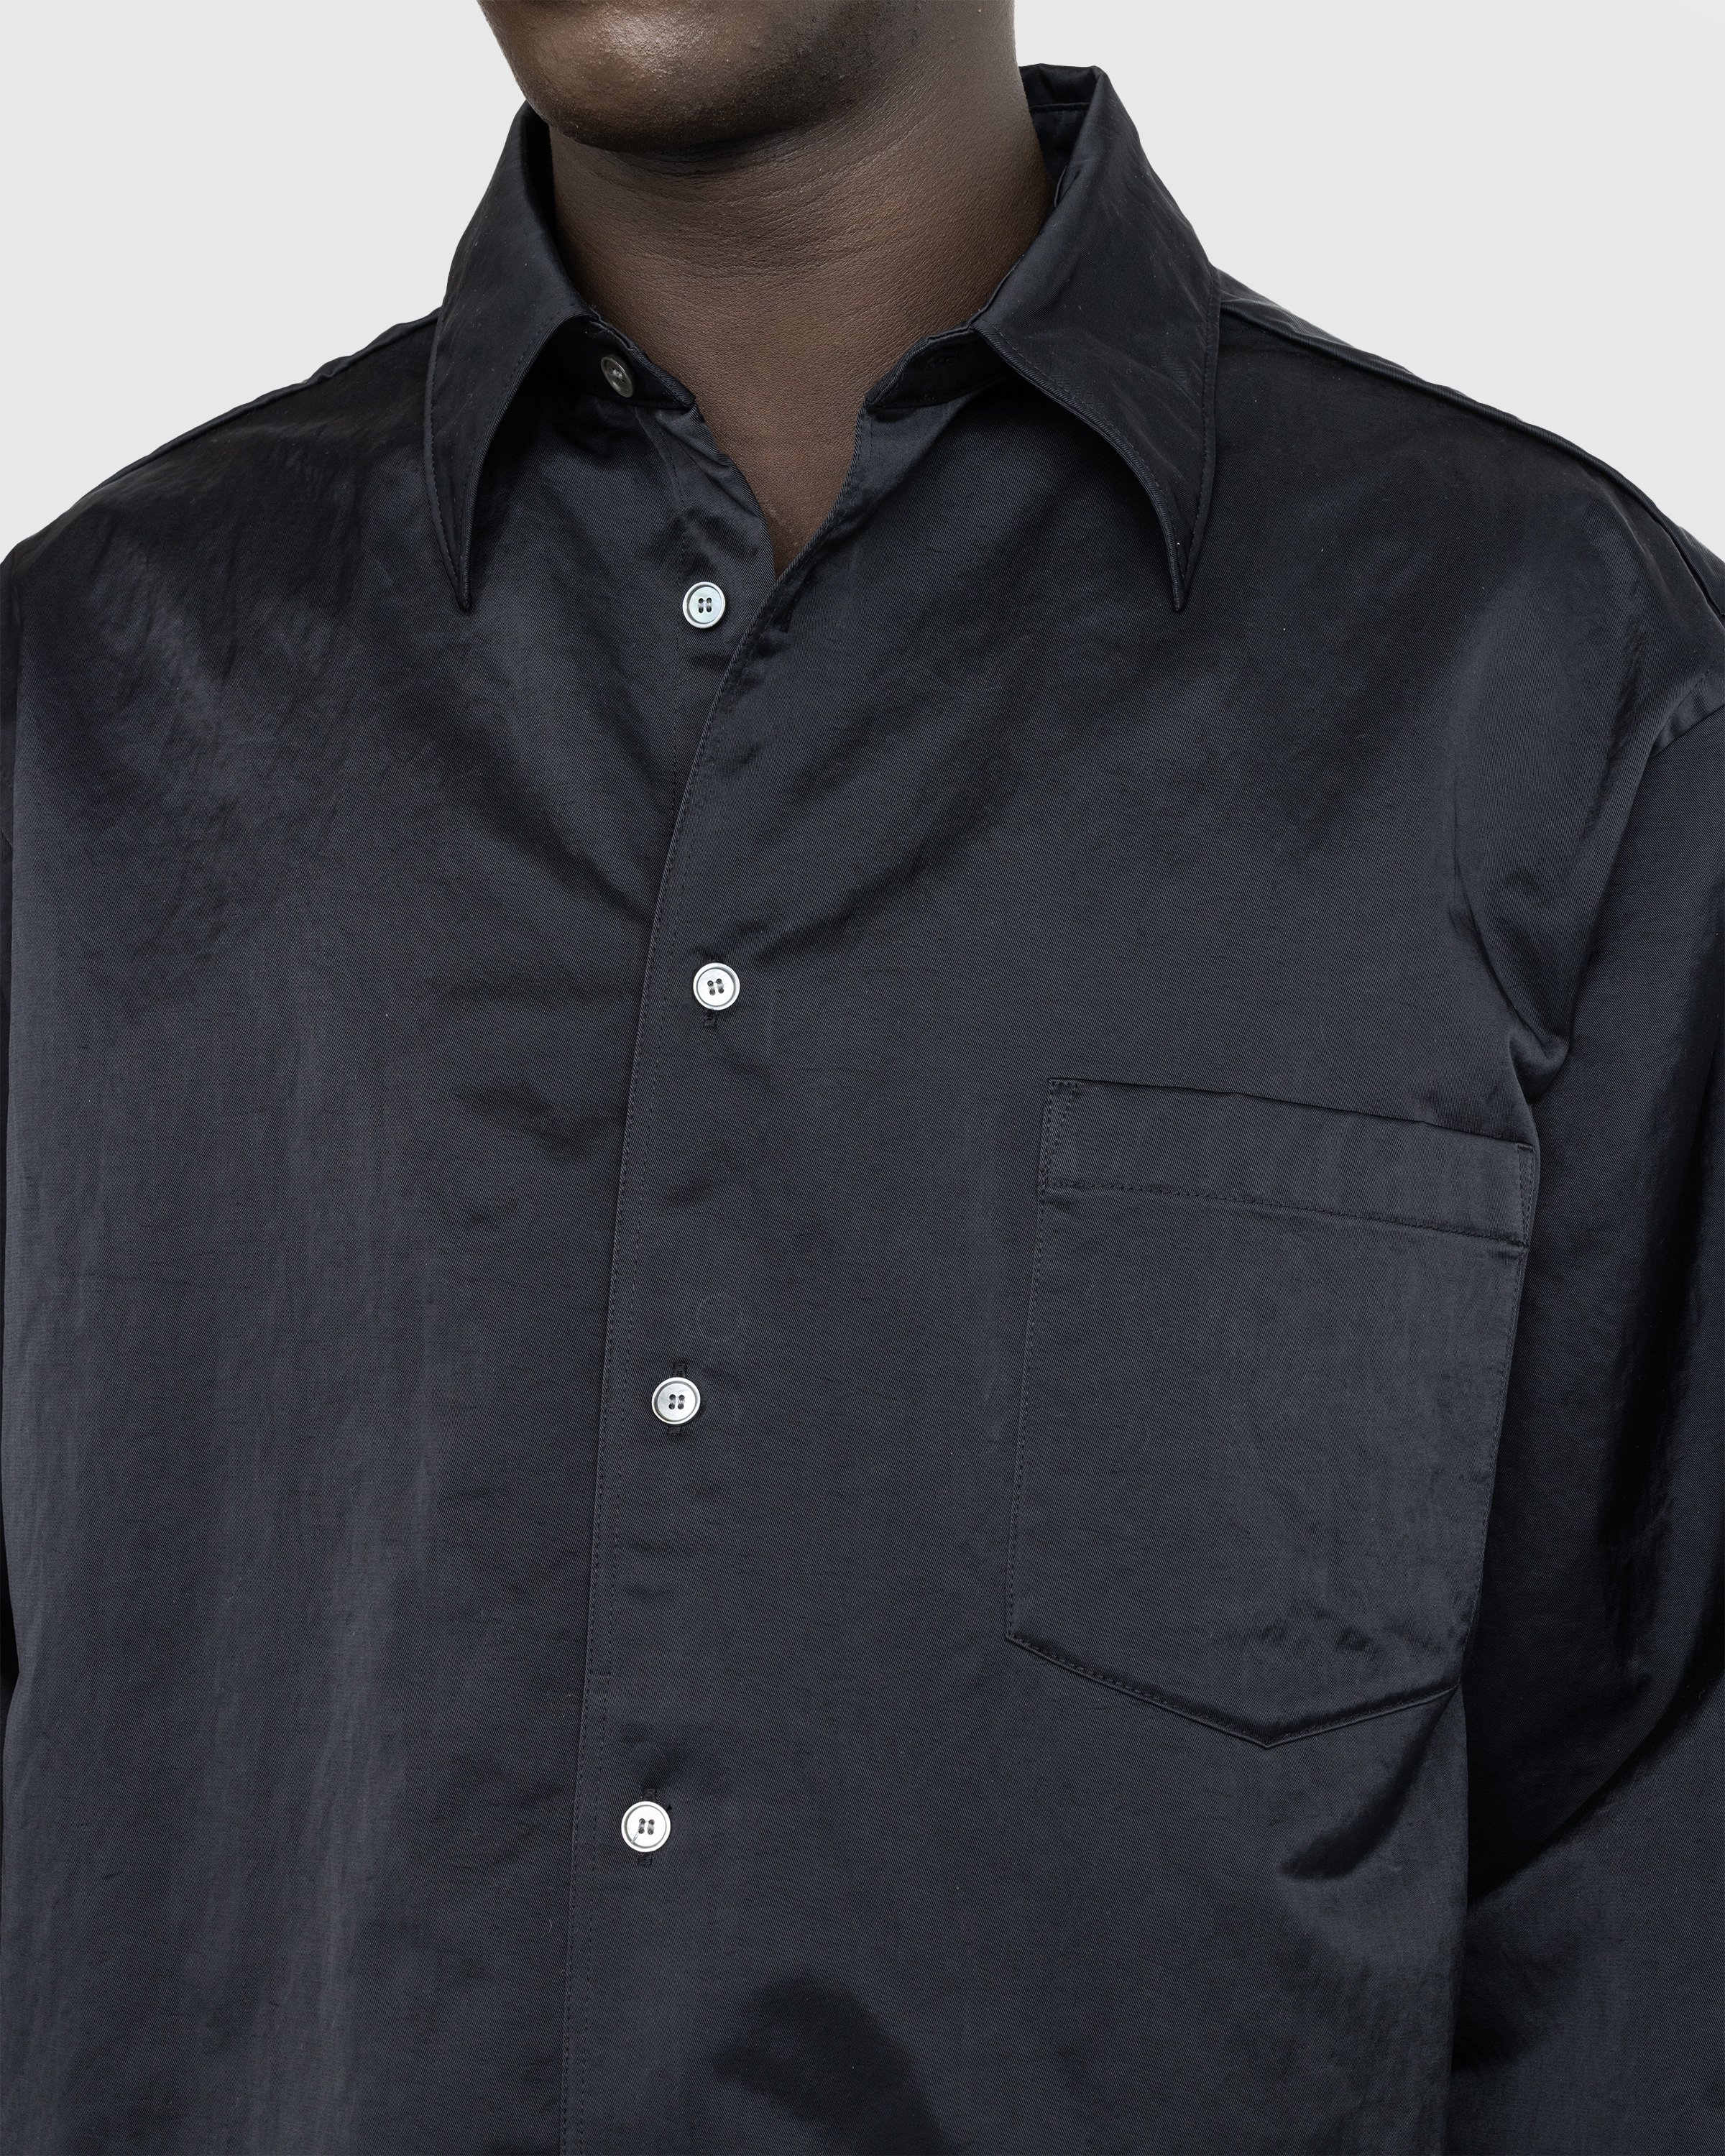 Acne Studios - Nylon Overshirt Black - Clothing - Black - Image 5